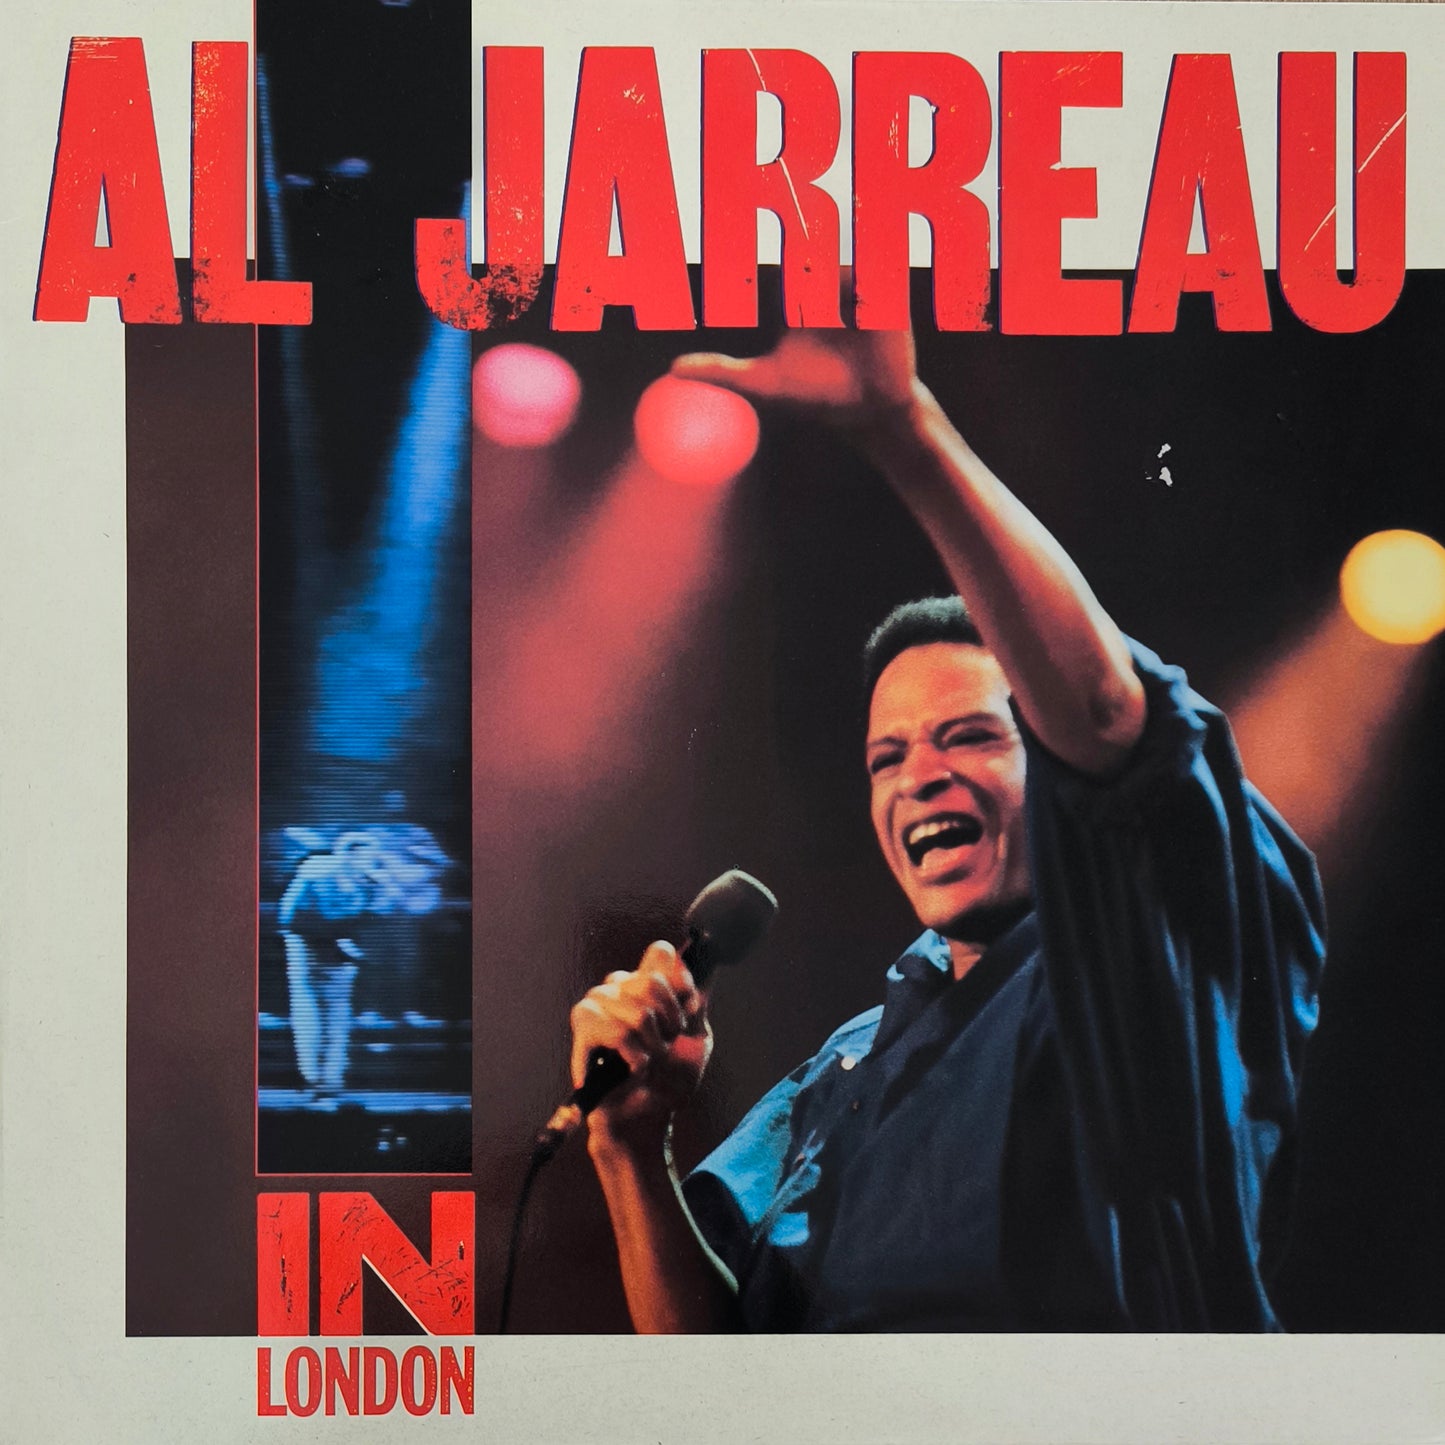 AL JARREAU - In London